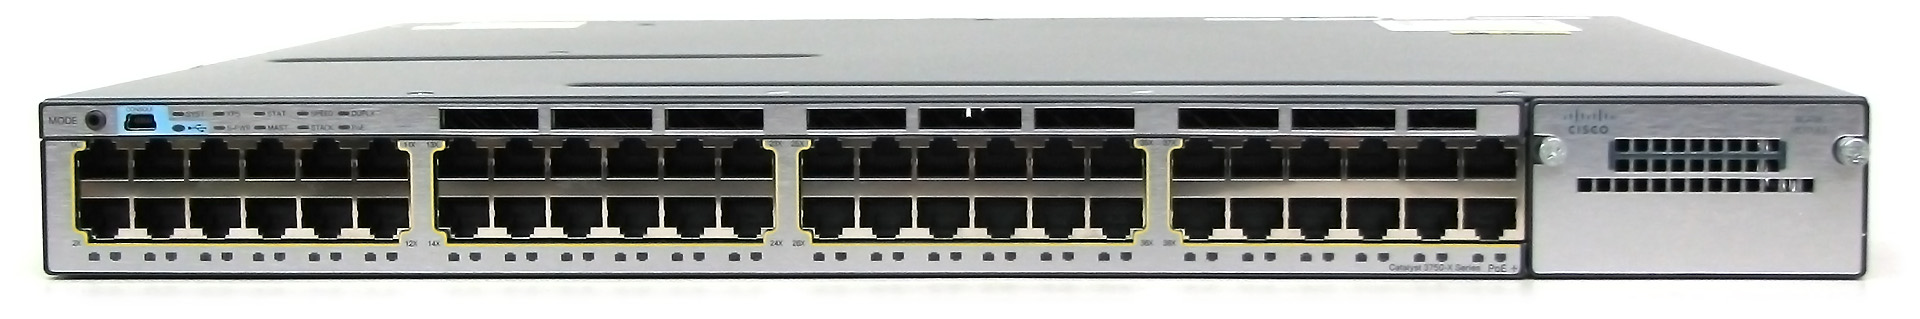 Cisco 3750-X Switch